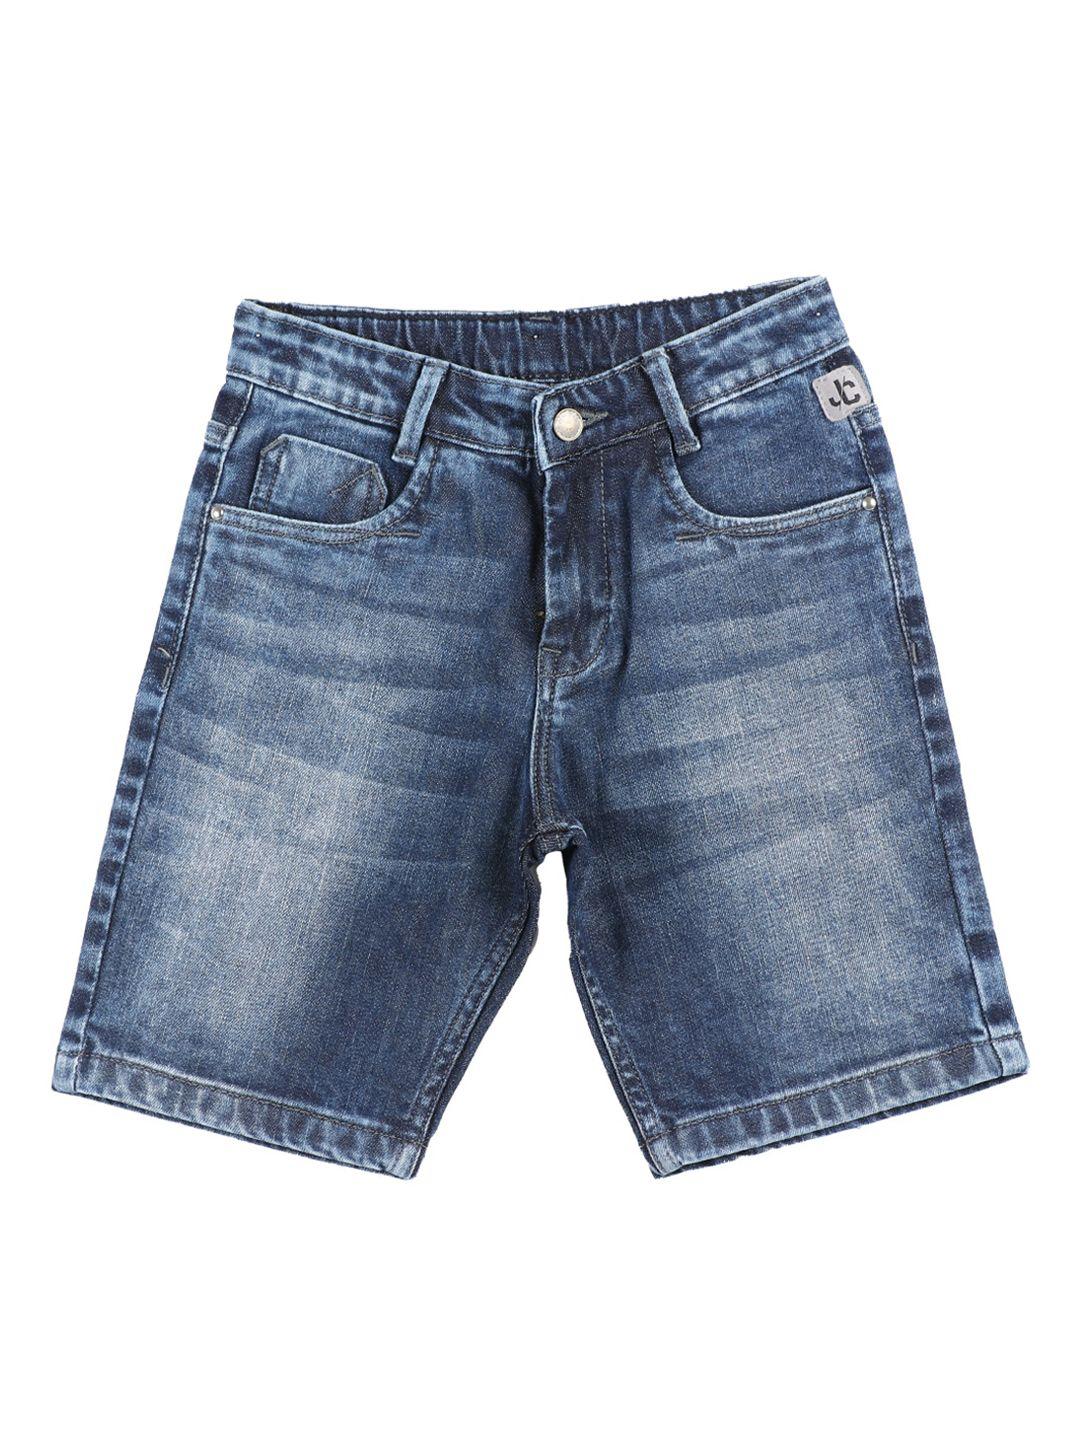 jean cafe boys blue washed slim fit denim shorts